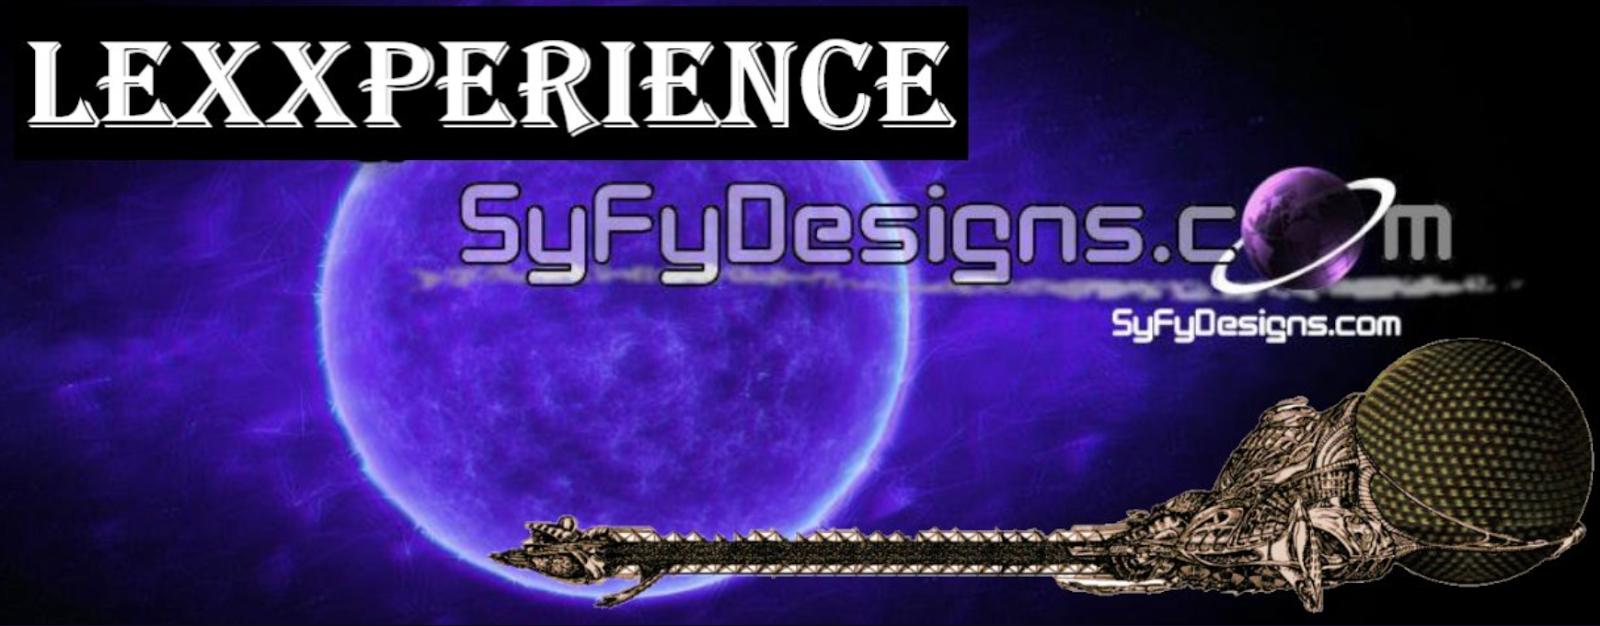 Lexxperience Lexx at SyfyDesigns.com